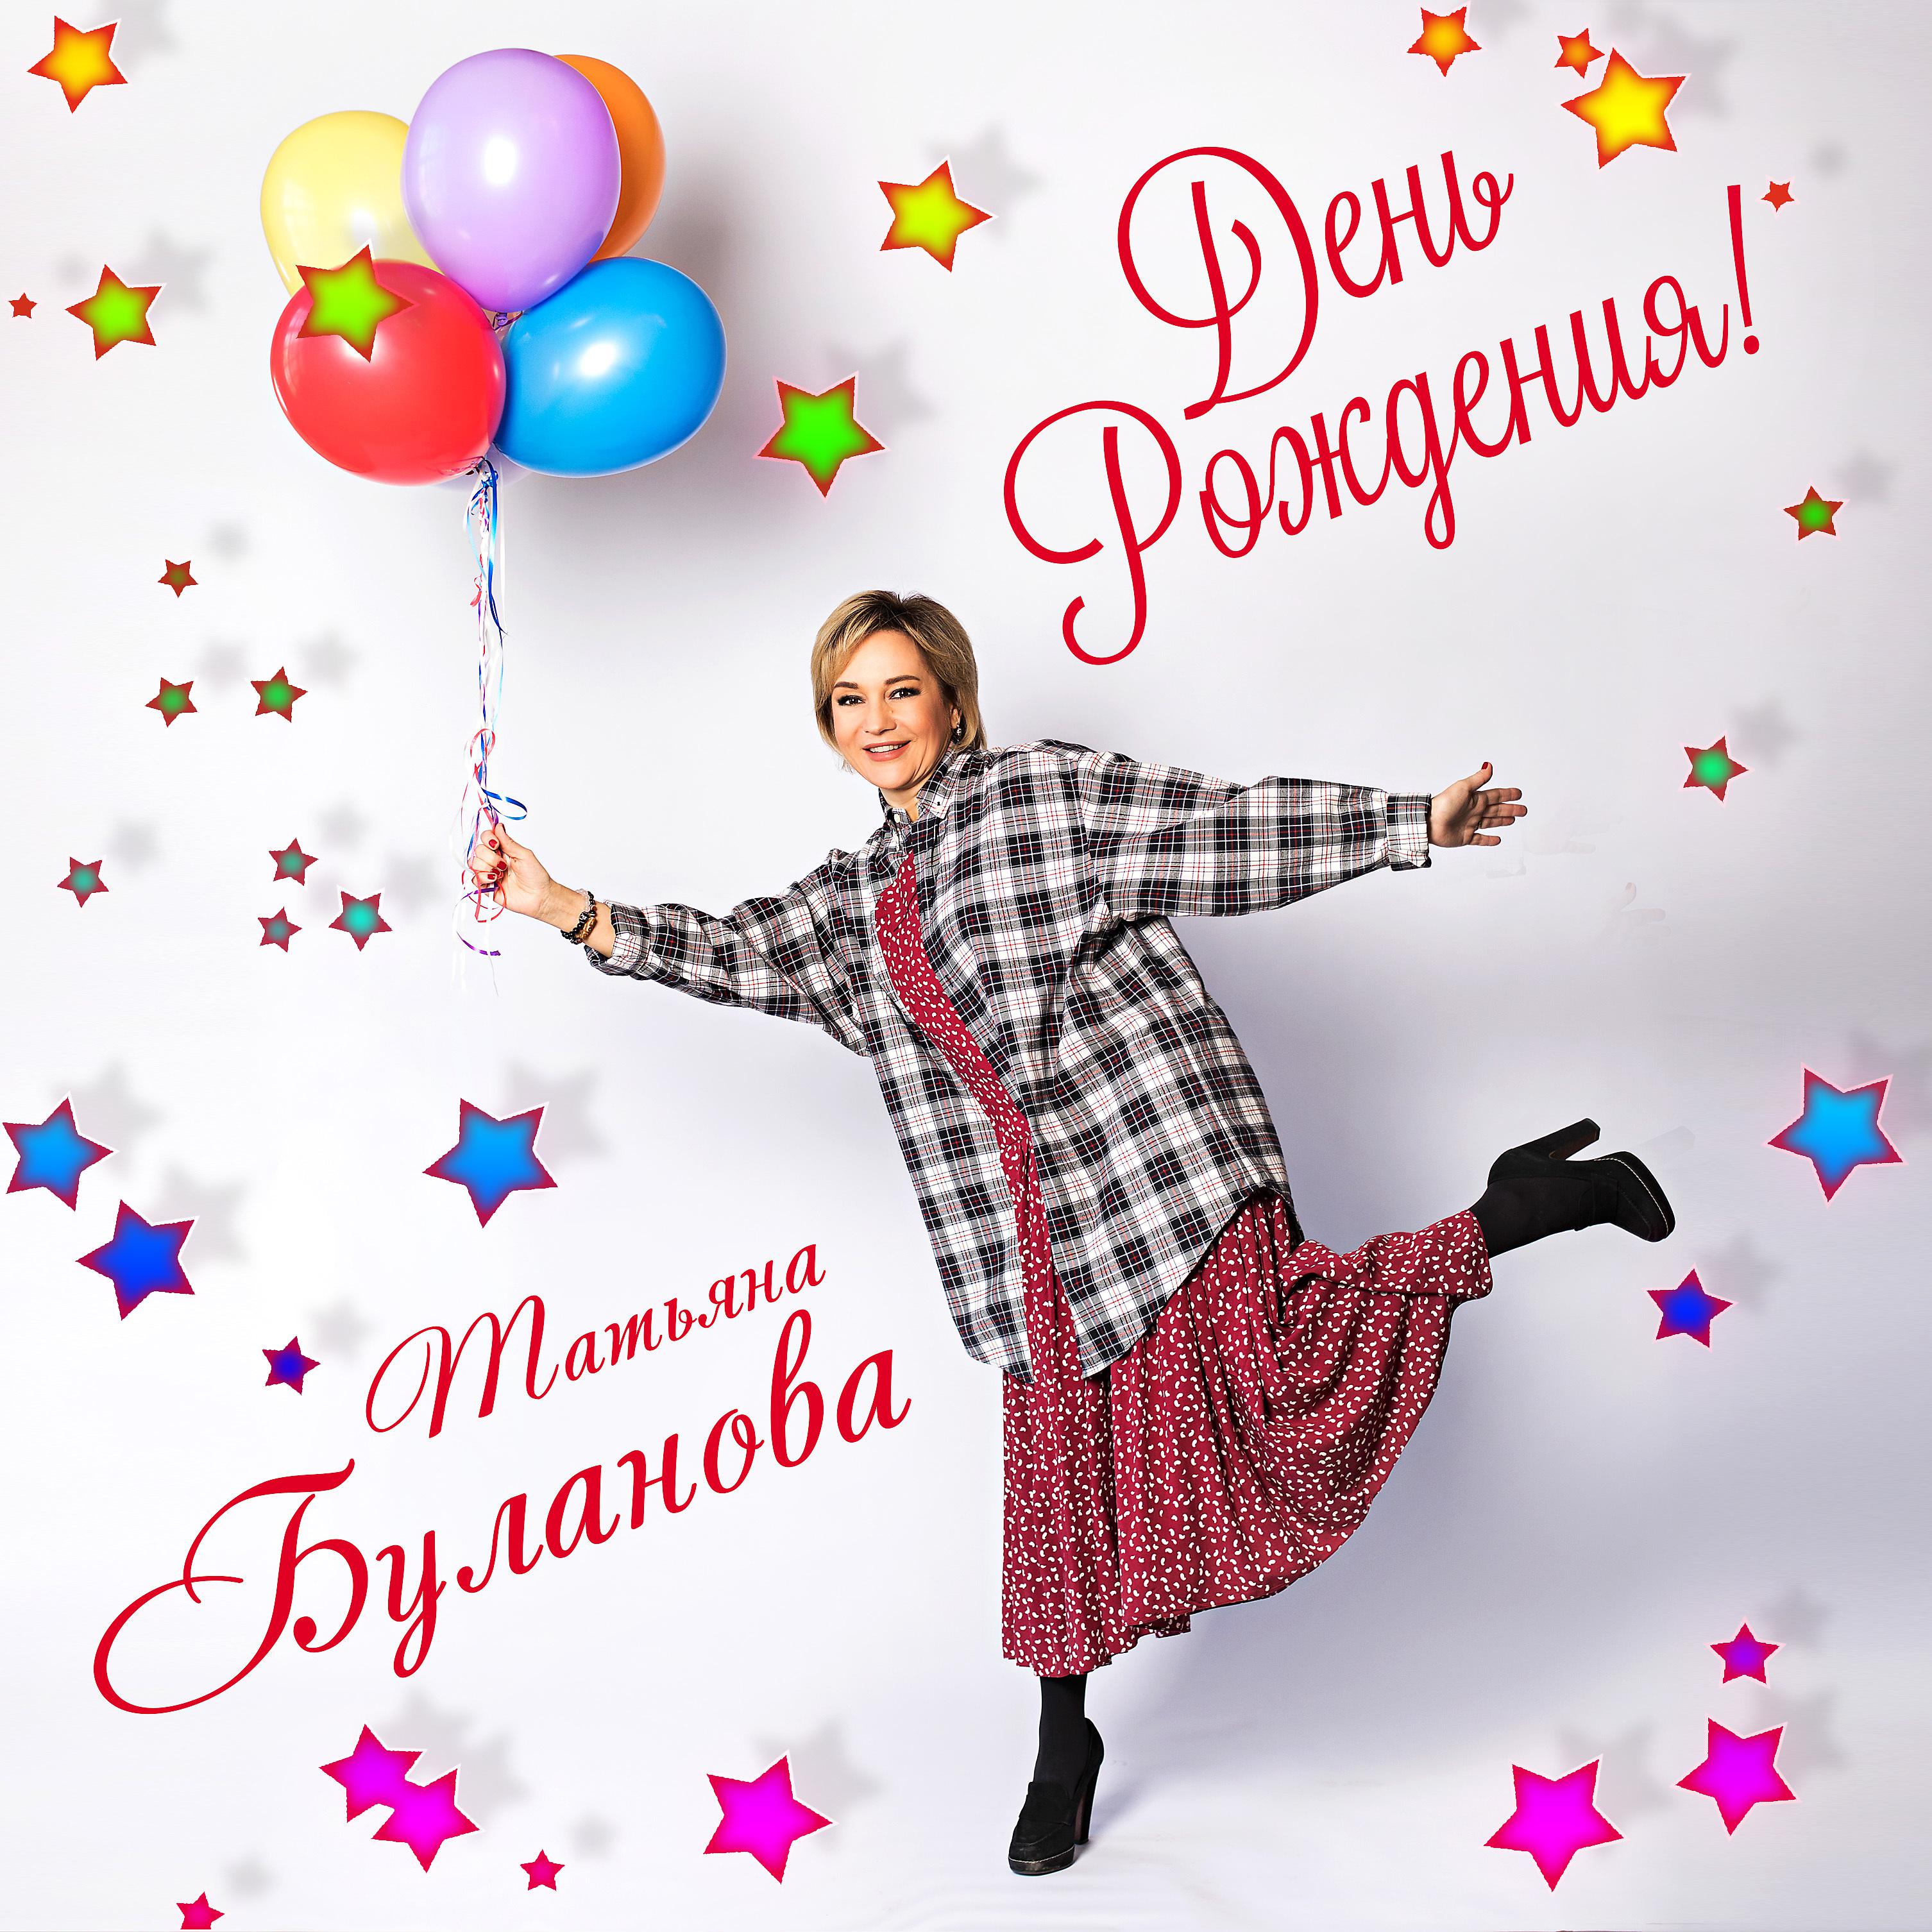 Песни про день рождения mp3. Таня Буланова с днем рождения.